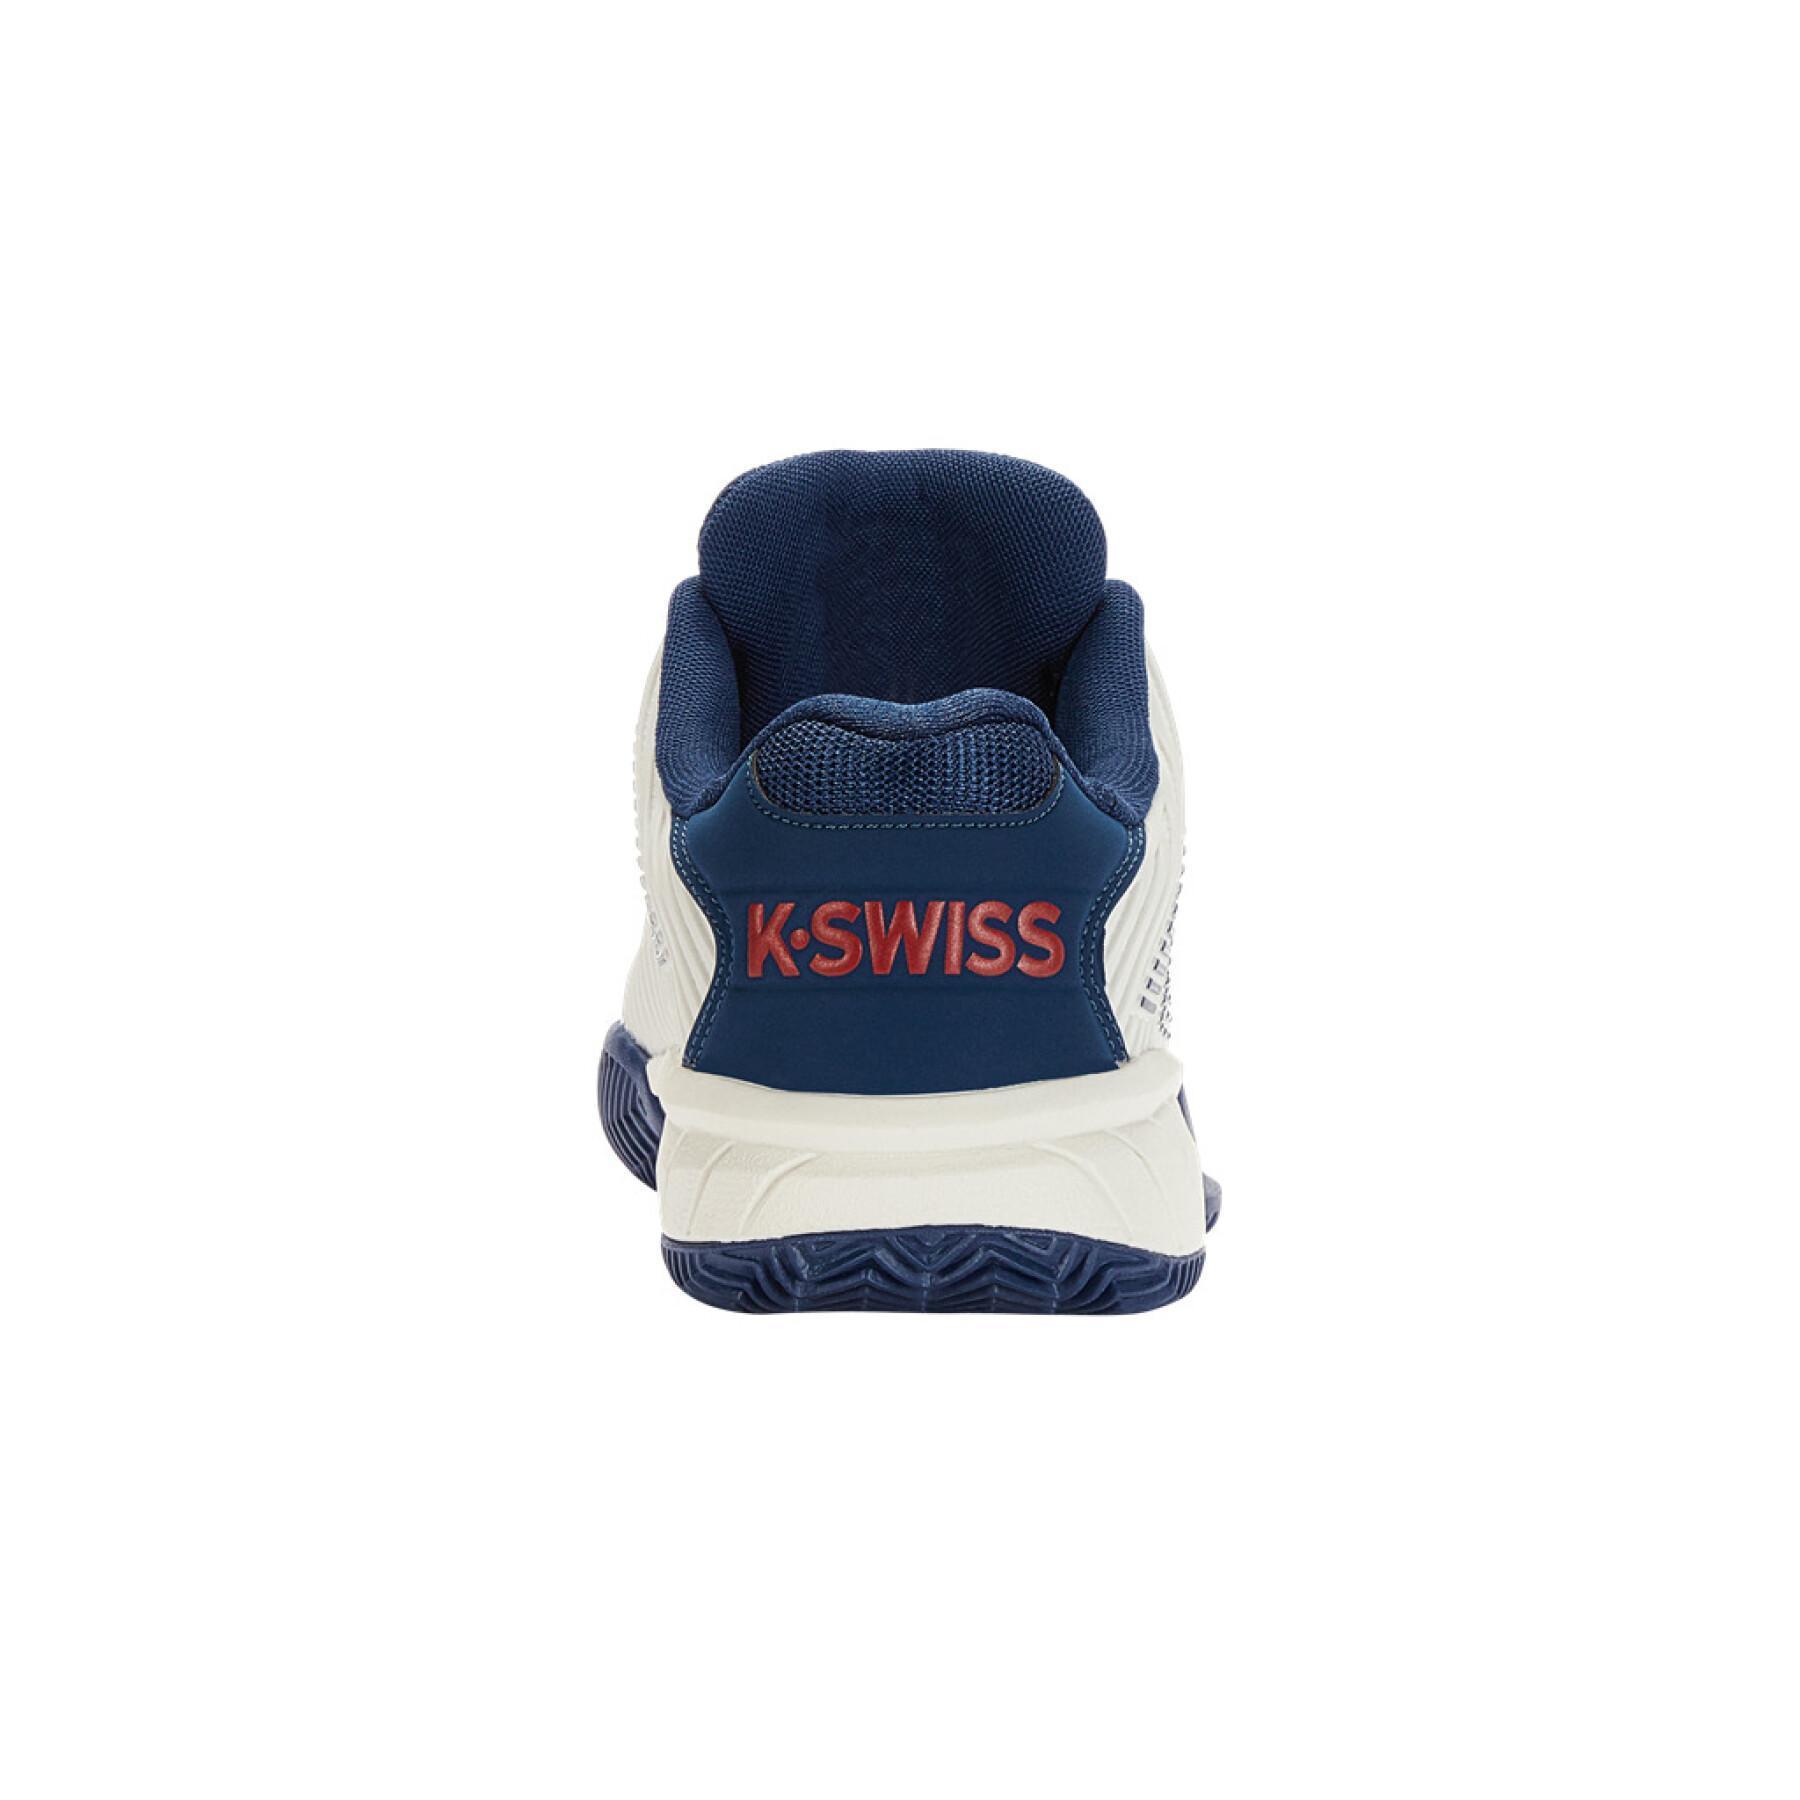 Children's tennis shoes K-Swiss Hypercourt Express 2 HB